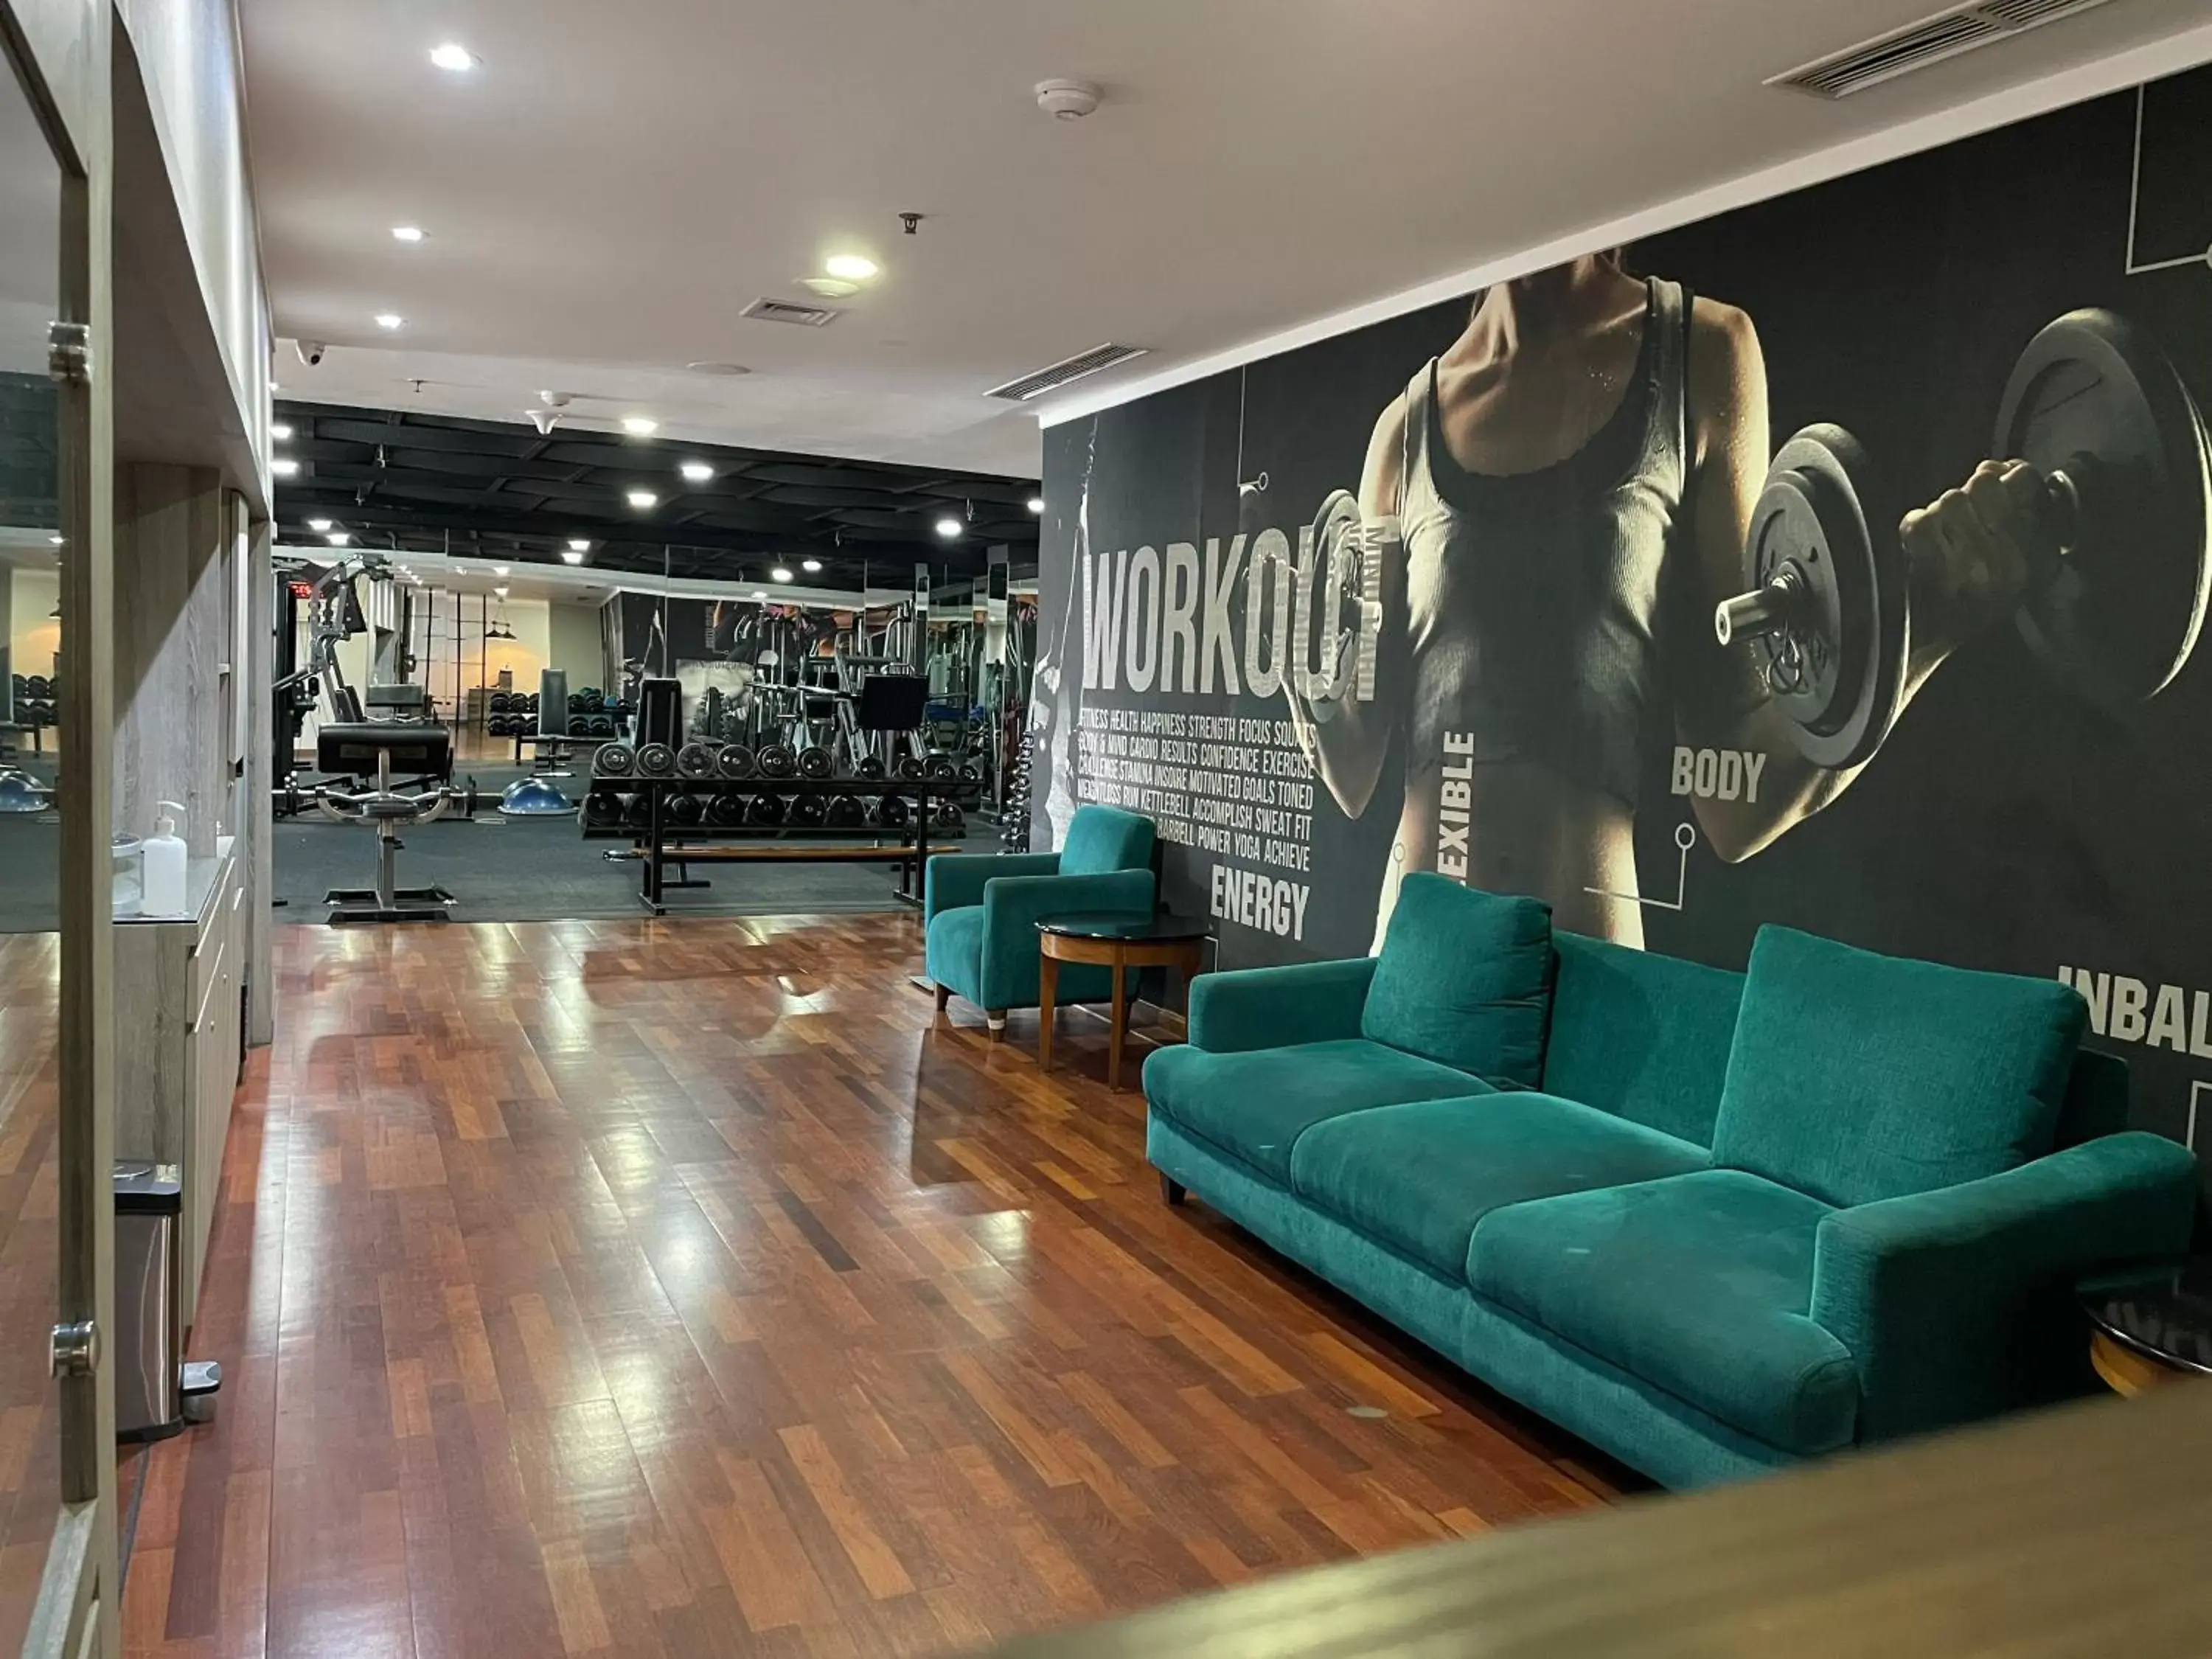 Fitness centre/facilities, Lobby/Reception in Kimaya Sudirman Yogyakarta by Harris